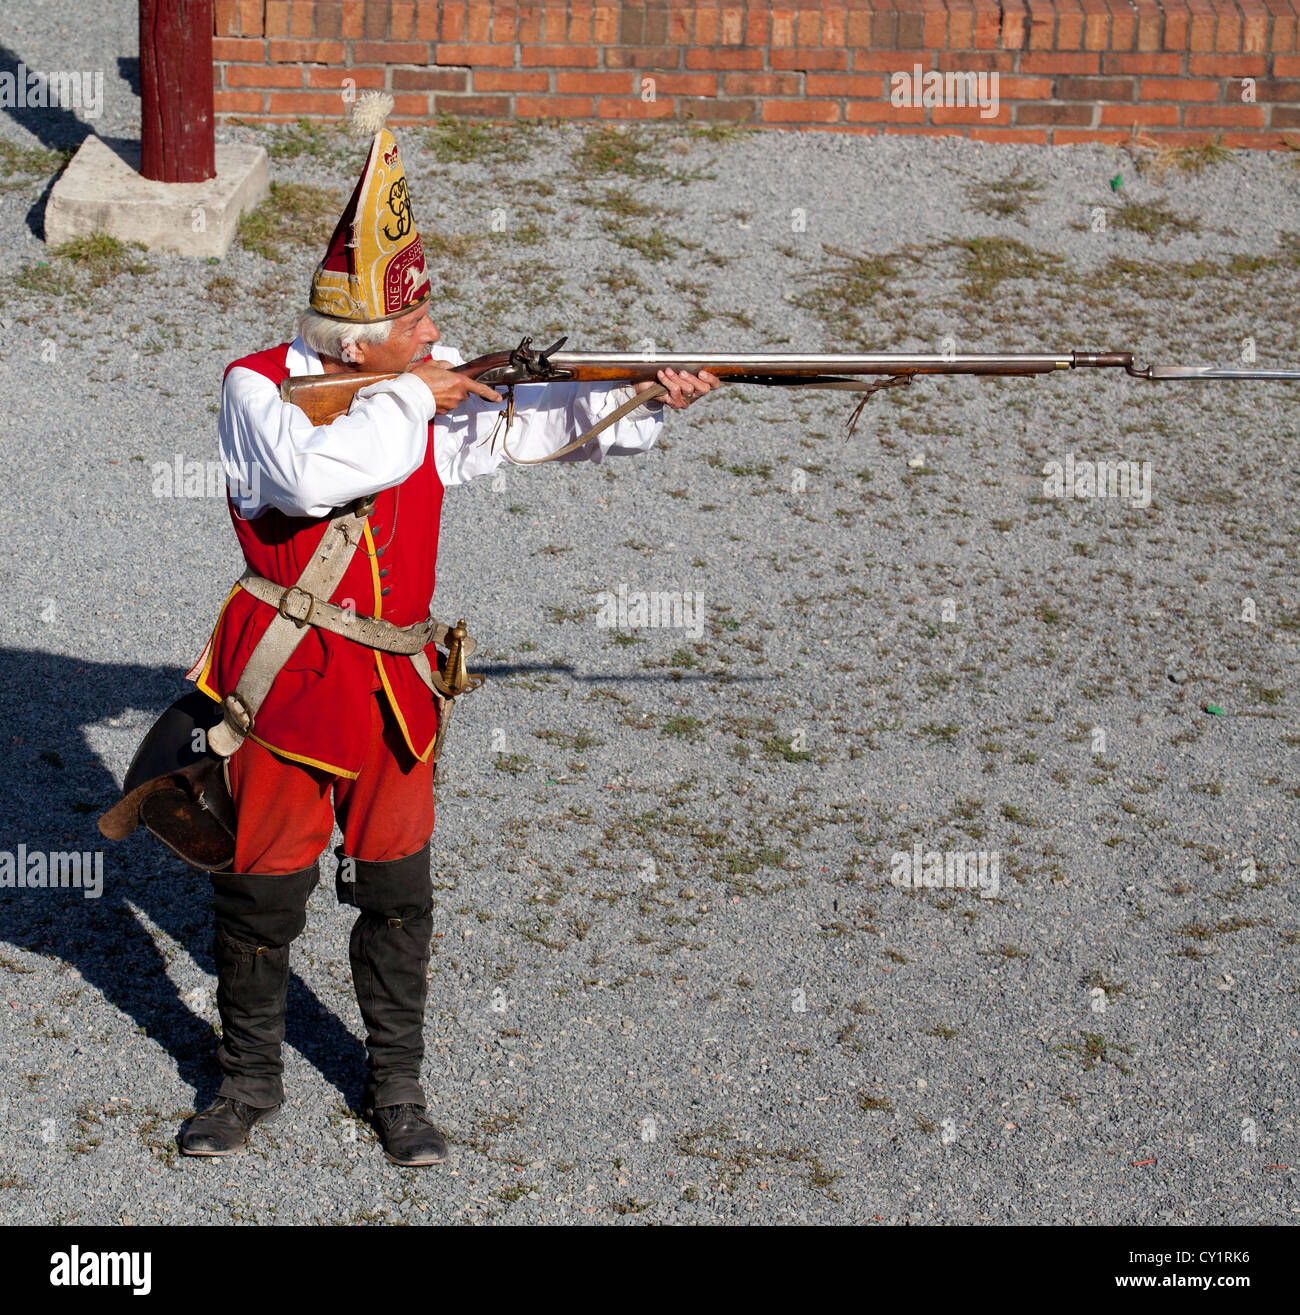 British Grenadier de la soudure French and Indian War au fort William Henry avec son fusil à la main. Banque D'Images